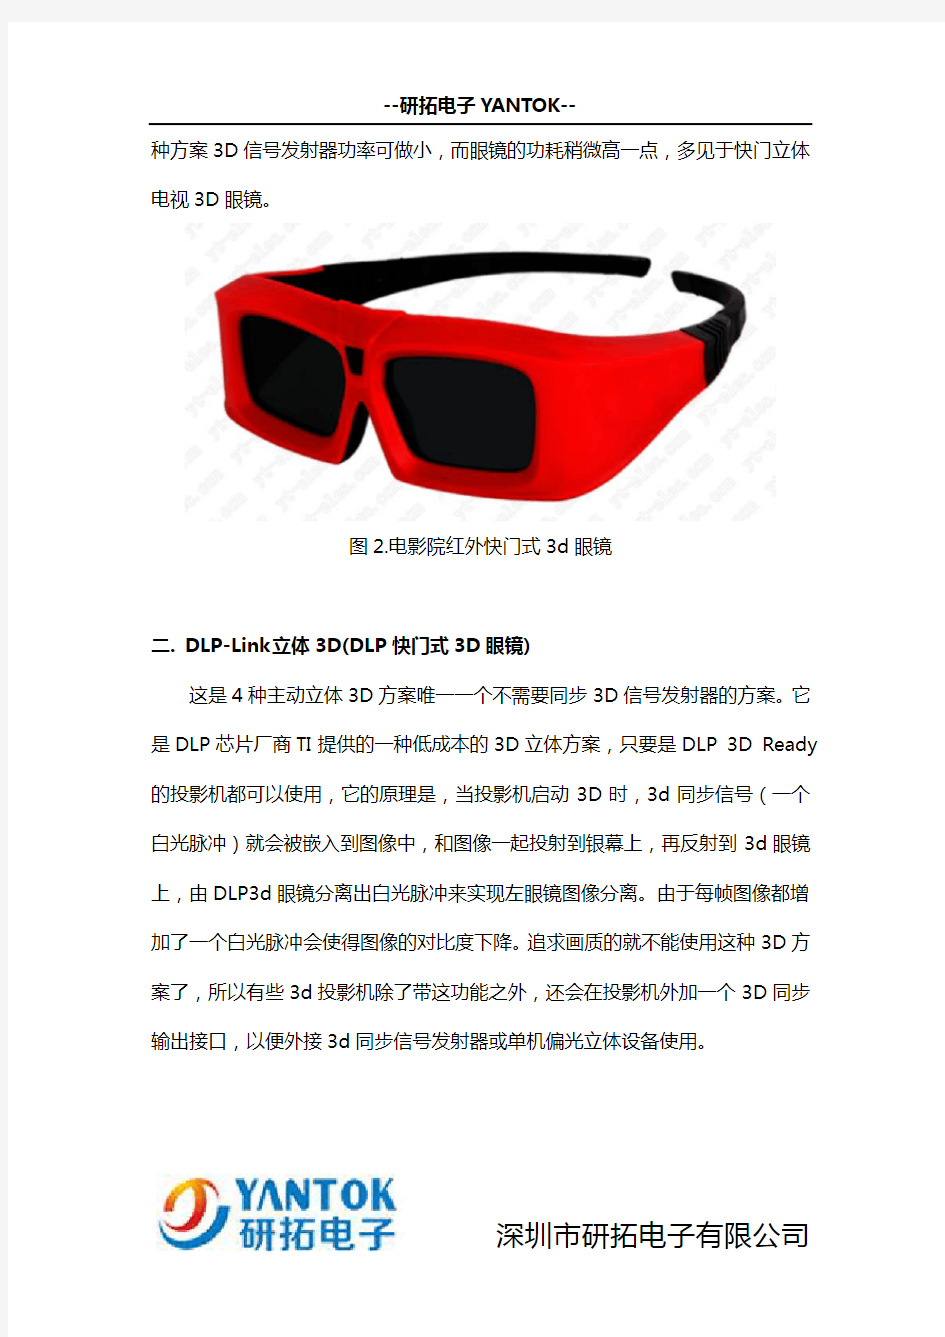 DLP快门式3d眼镜通用吗,主动式3D眼镜详细解答